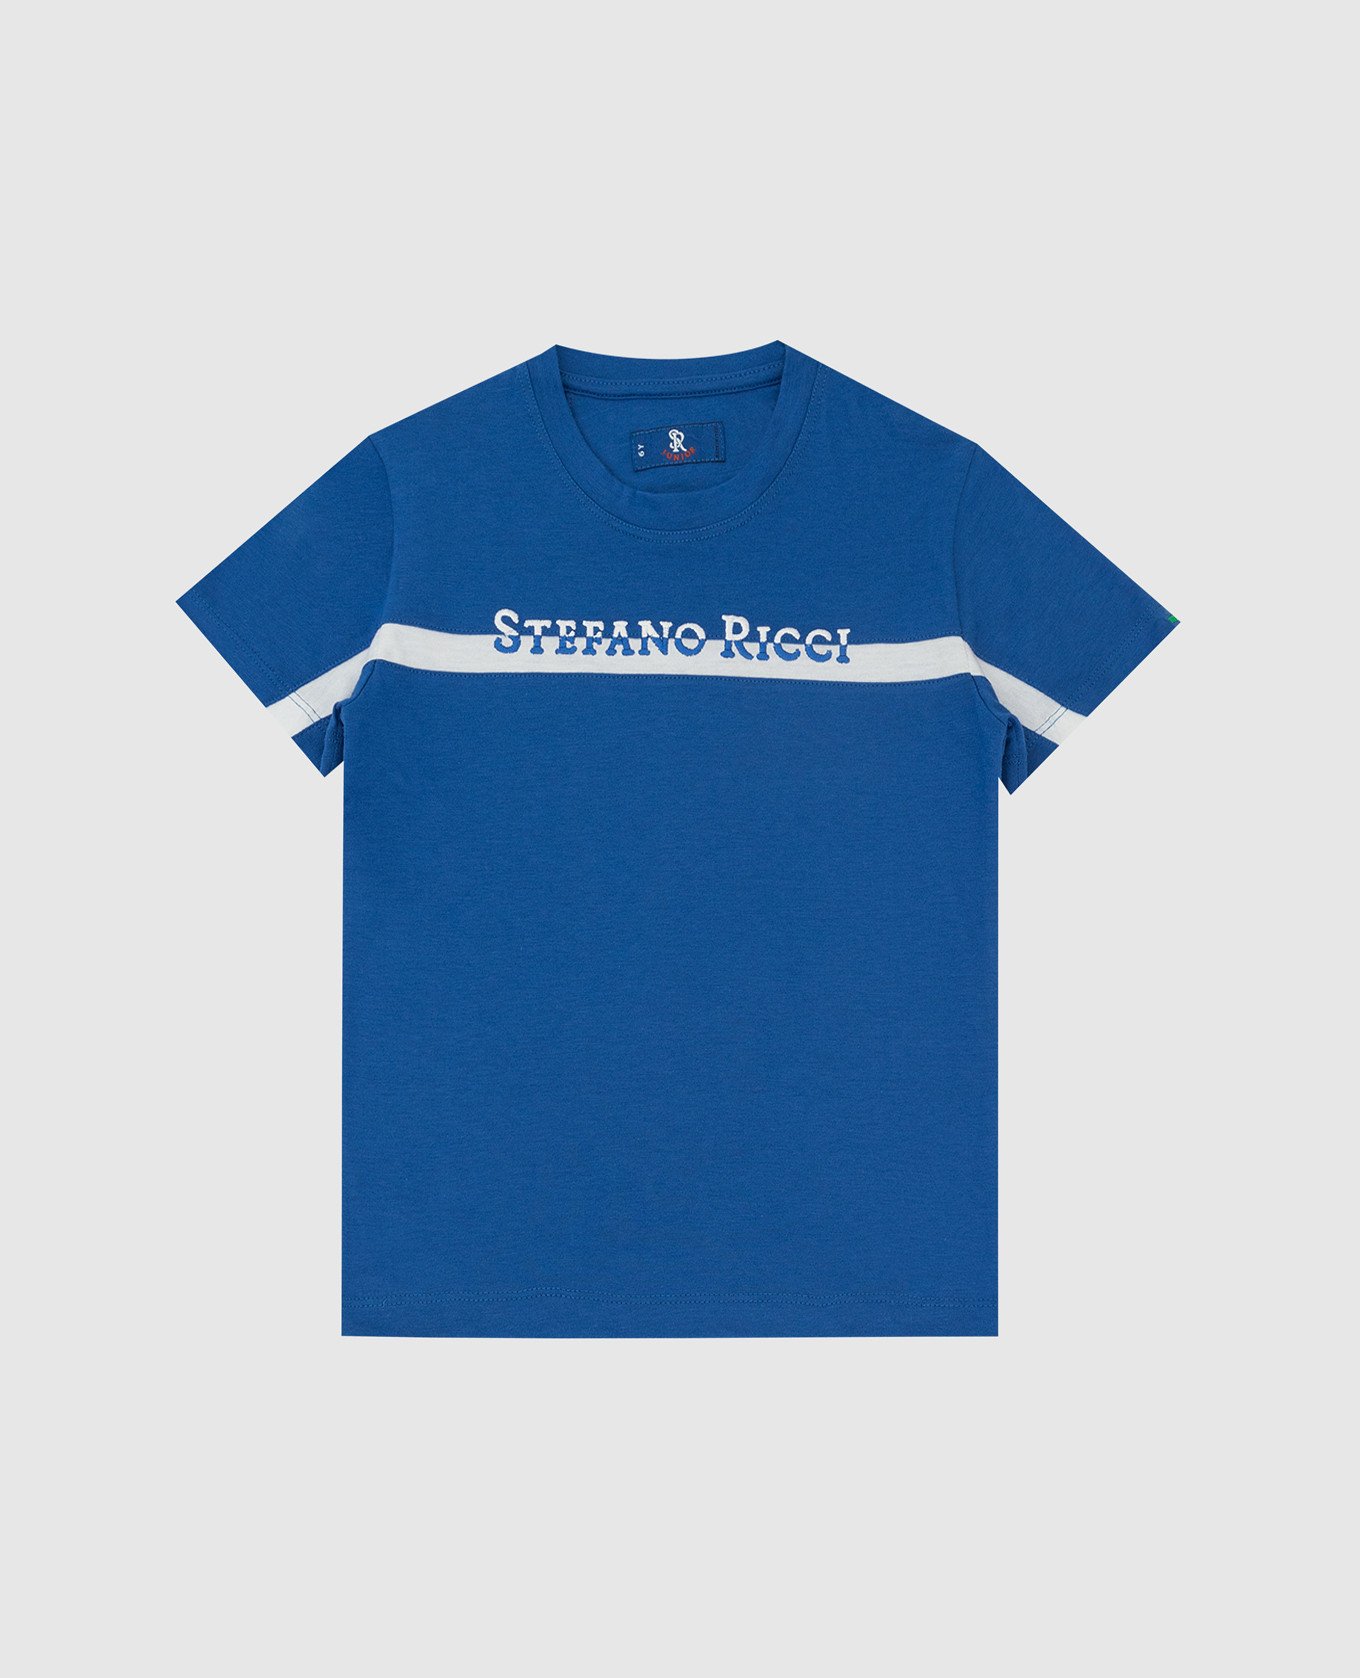 Детская синяя футболка с вышивкой логотипа